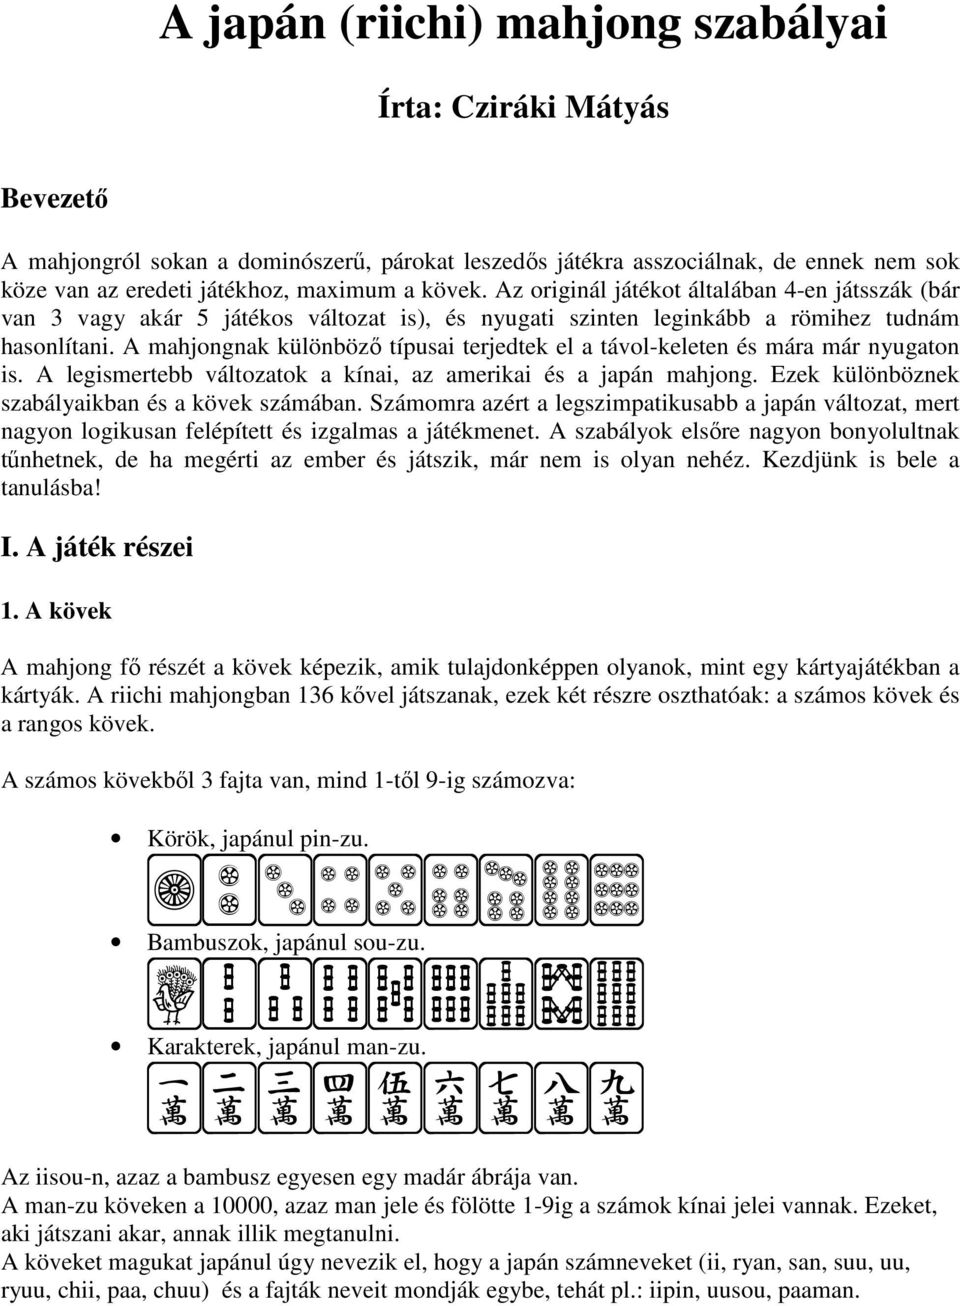 A japán (riichi) mahjong szabályai - PDF Free Download